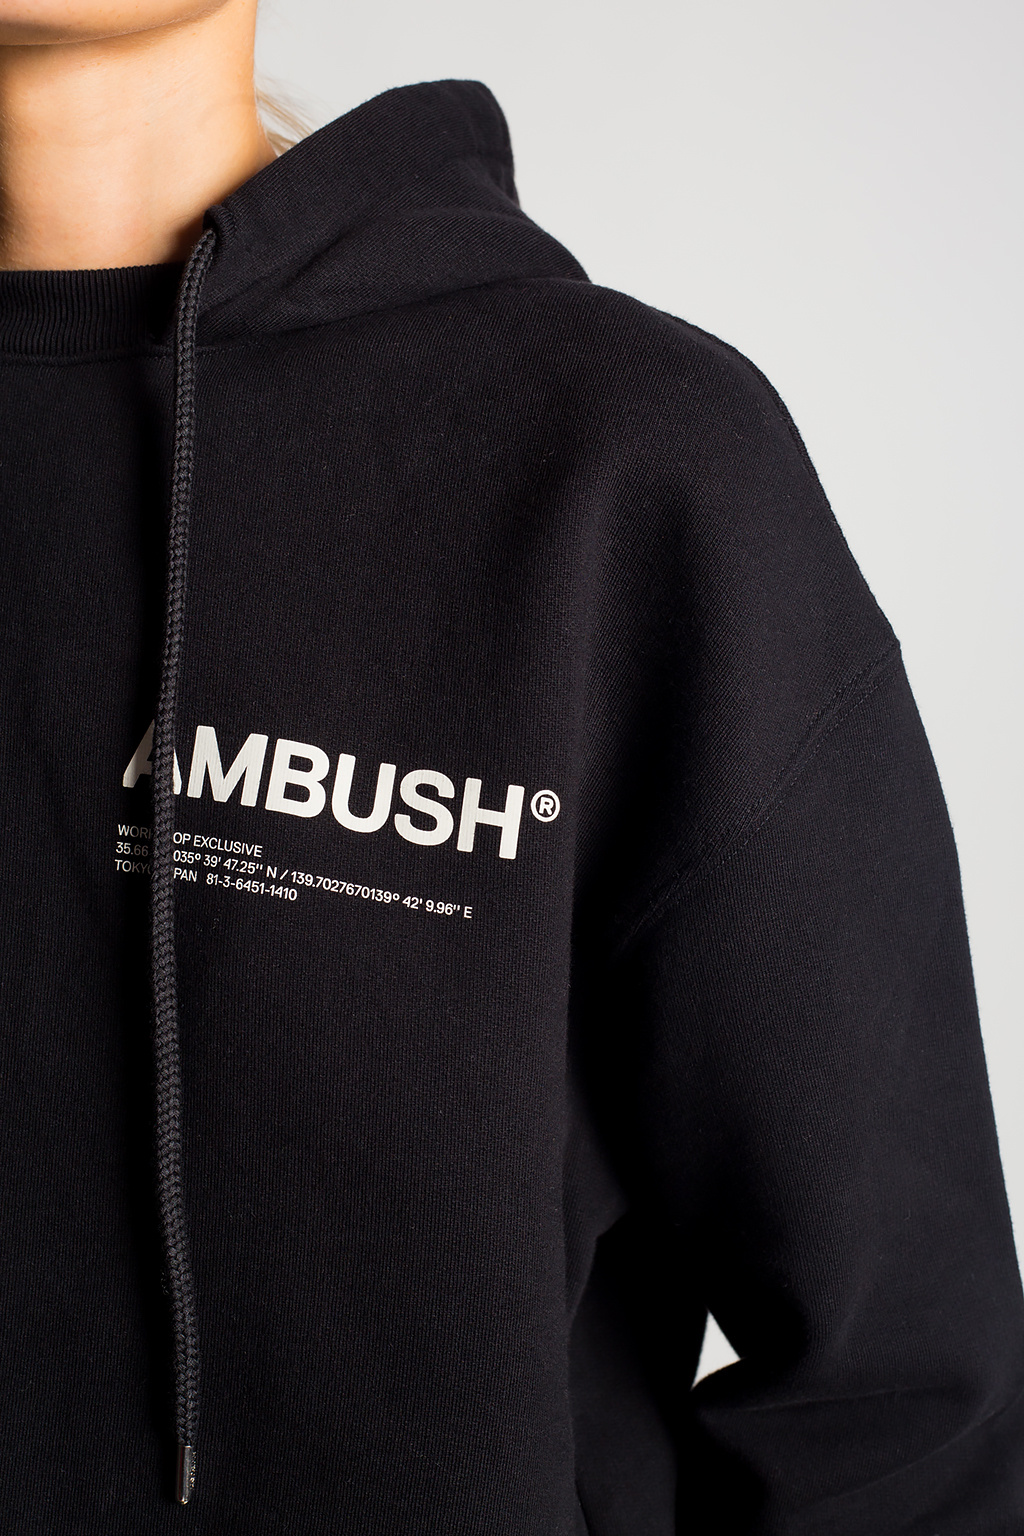 Ambush back-printed geometric hoodie